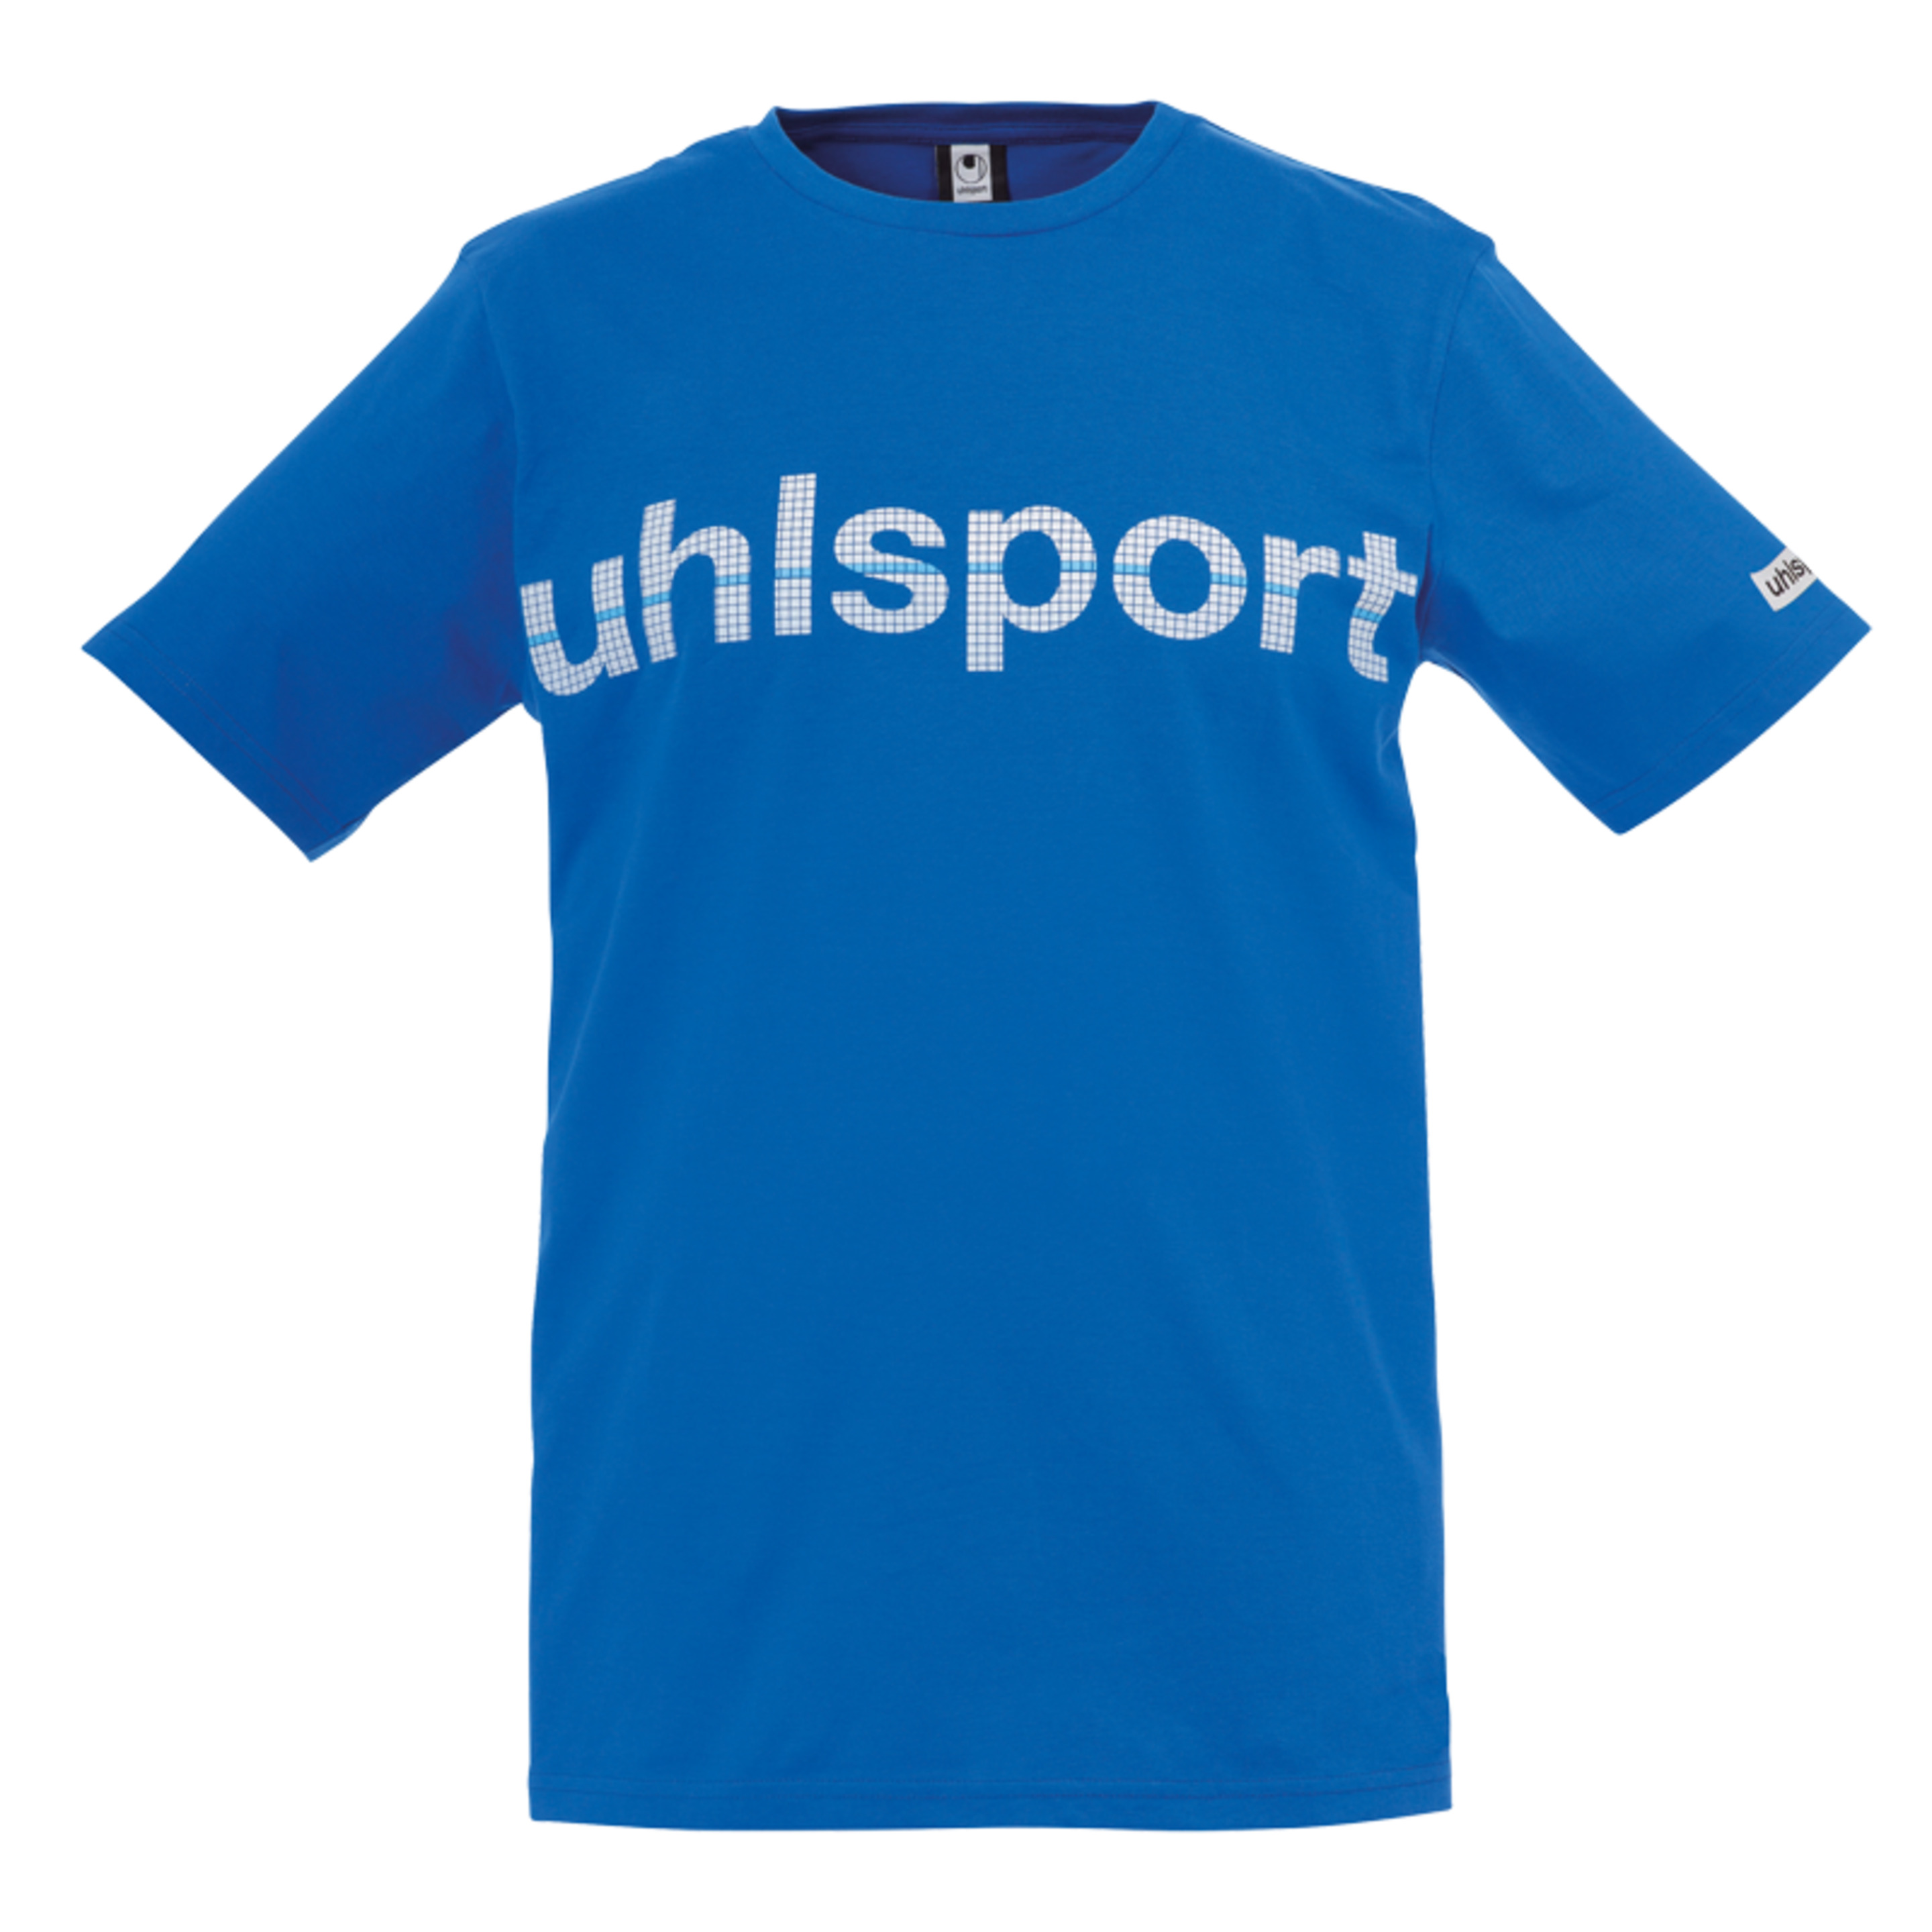 Essential Promo Camiseta Azur Uhlsport